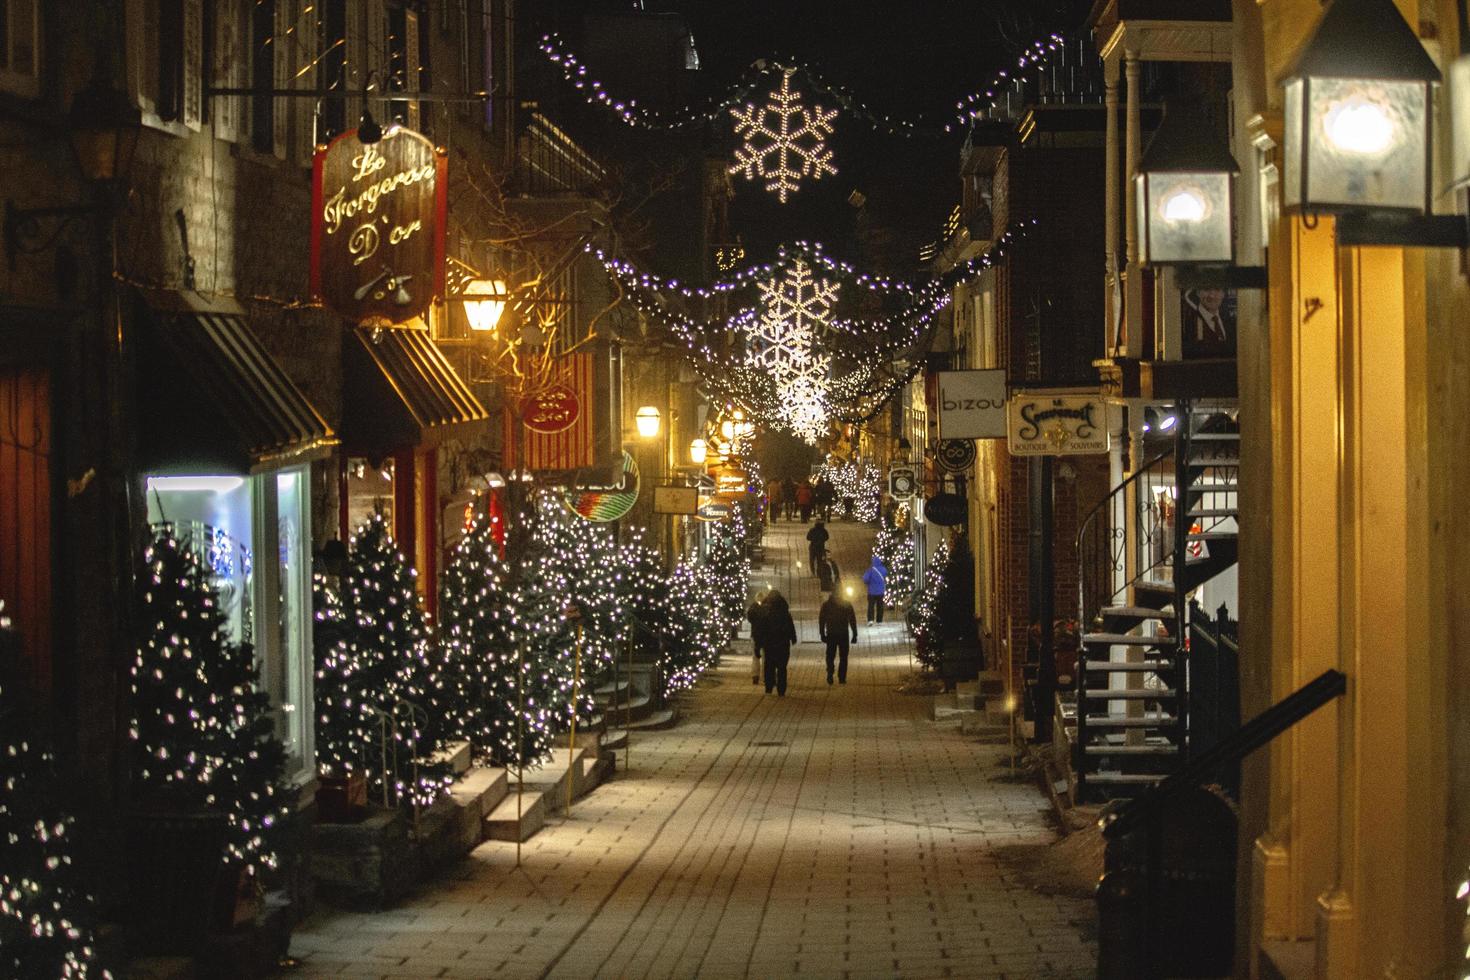 Quebec, Canada, 2019 - Christmas decor in alleyway photo